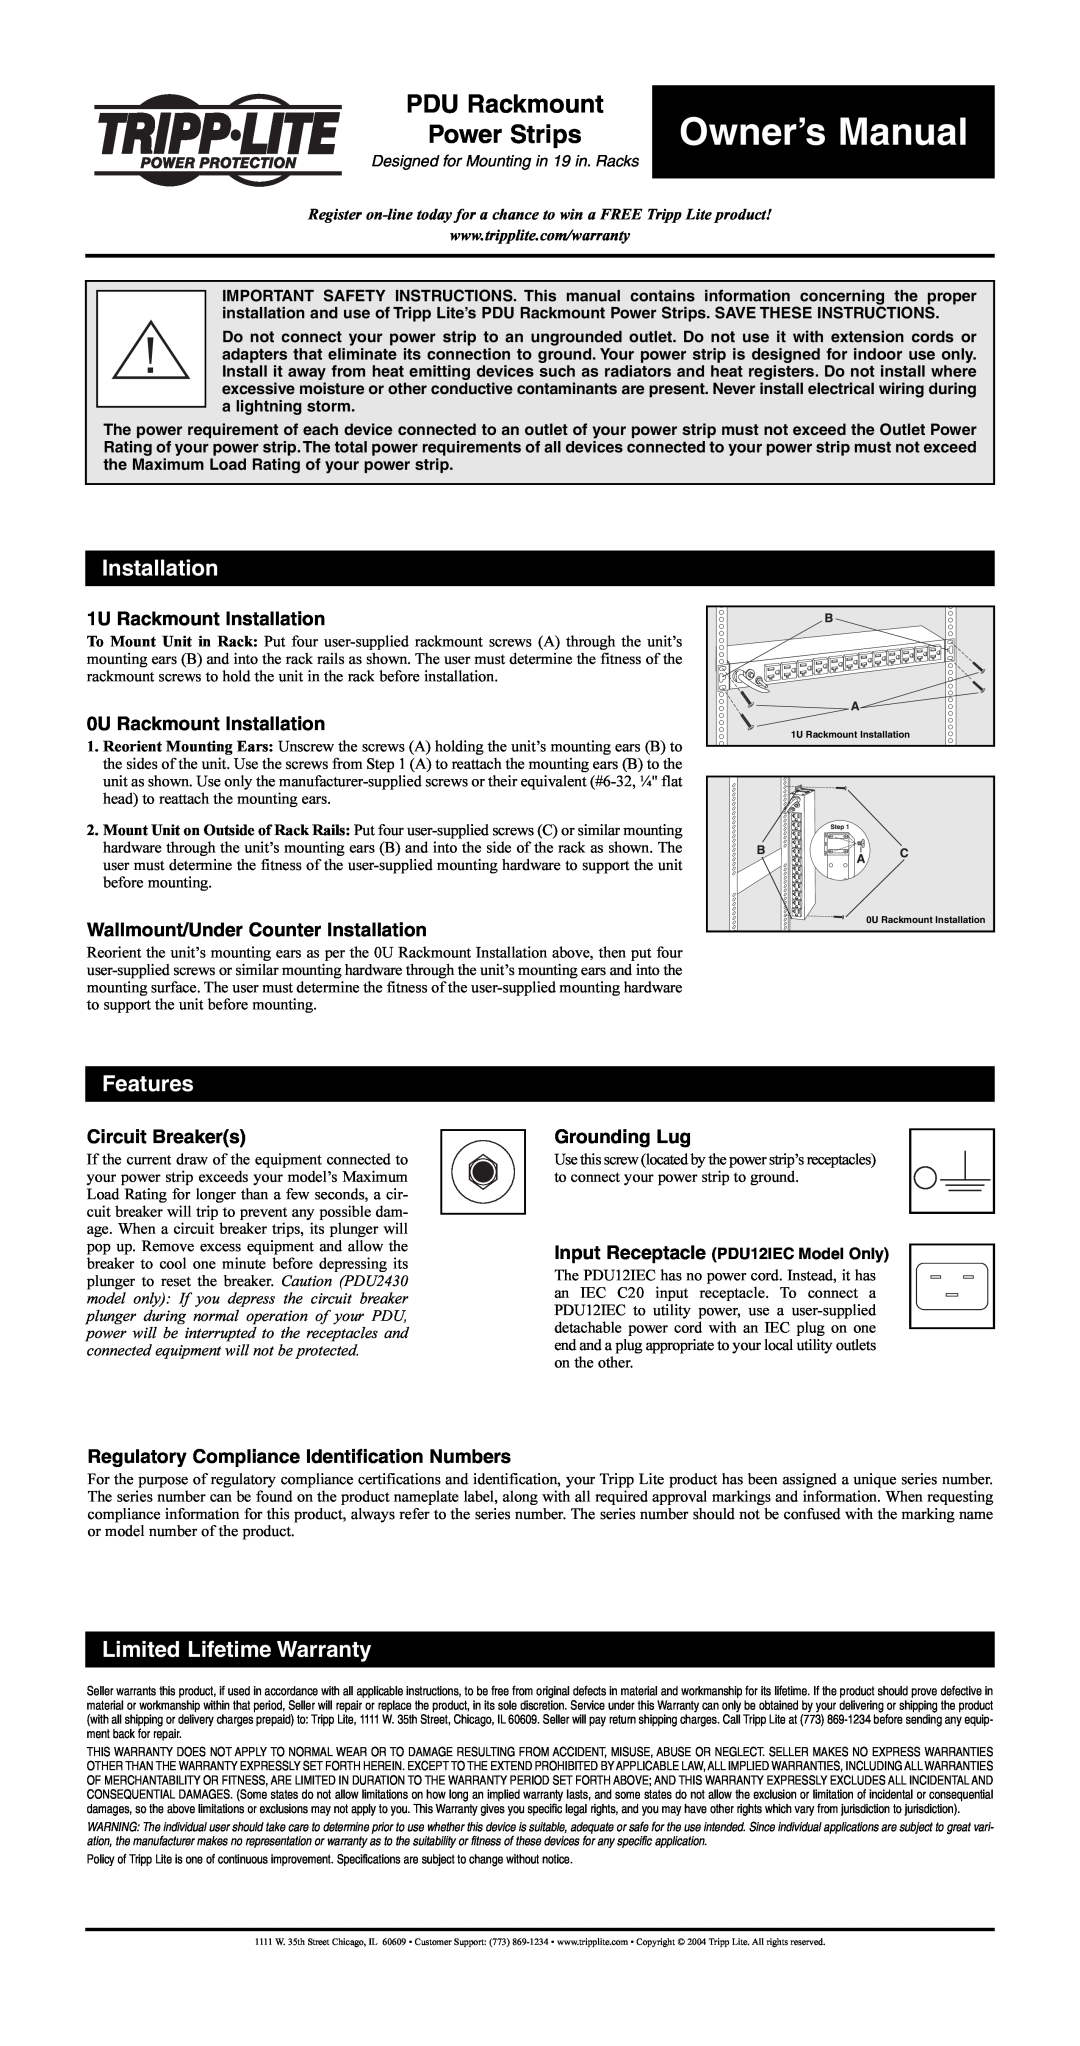 Tripp Lite 200407059 owner manual 1U Rackmount Installation, 0U Rackmount Installation, Circuit Breakers, Grounding Lug 